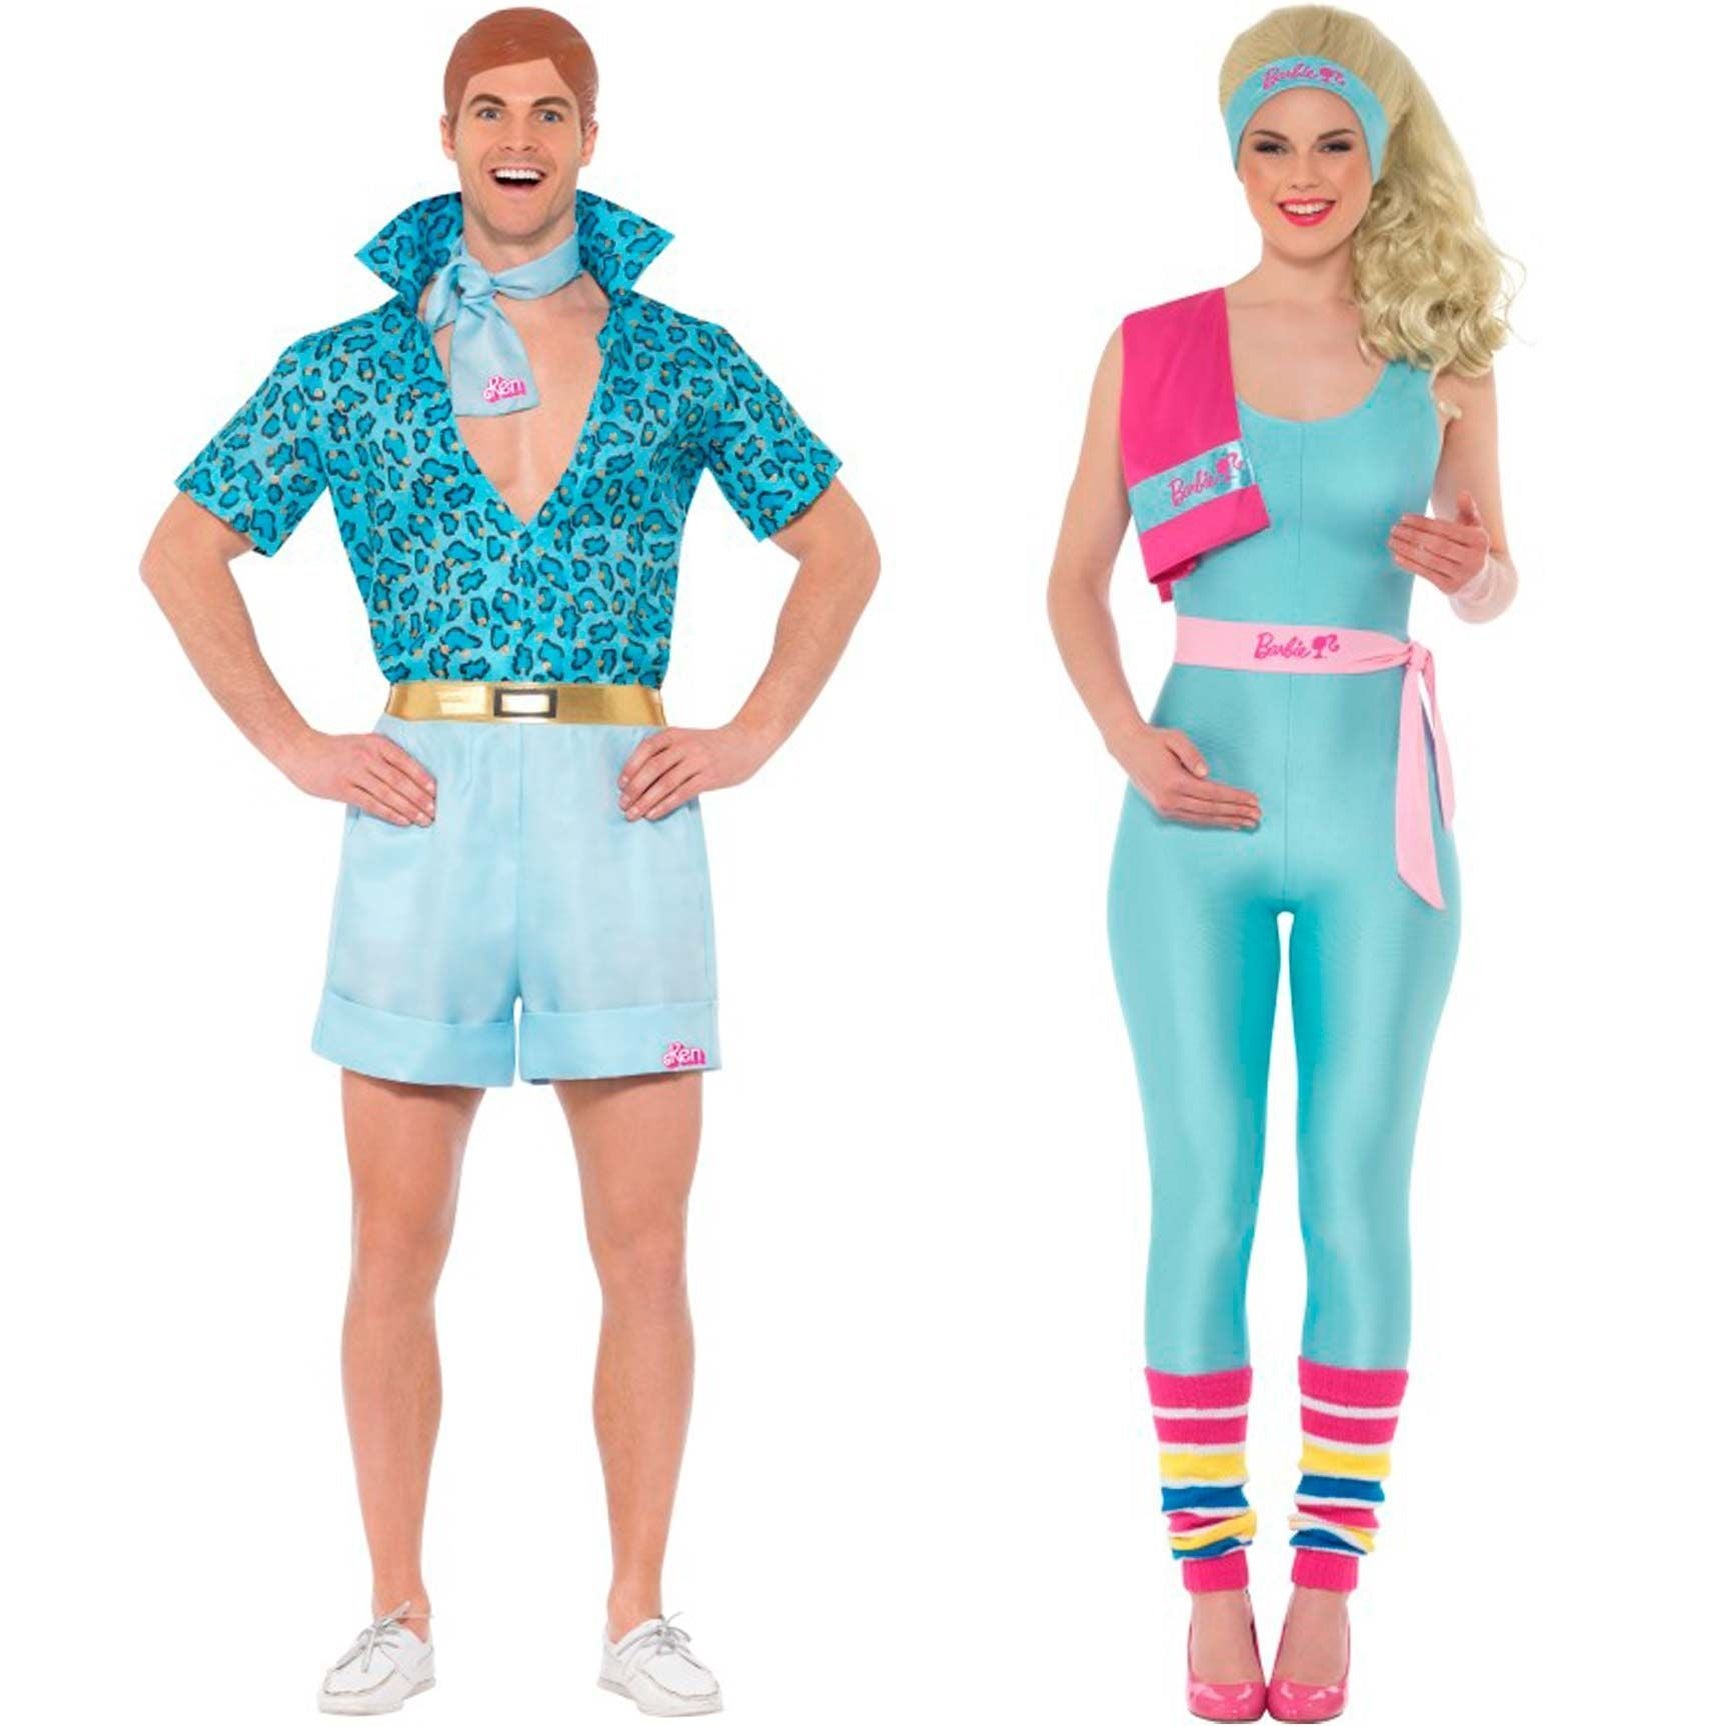 Comprar online Disfraces en pareja de Barbie y Ken